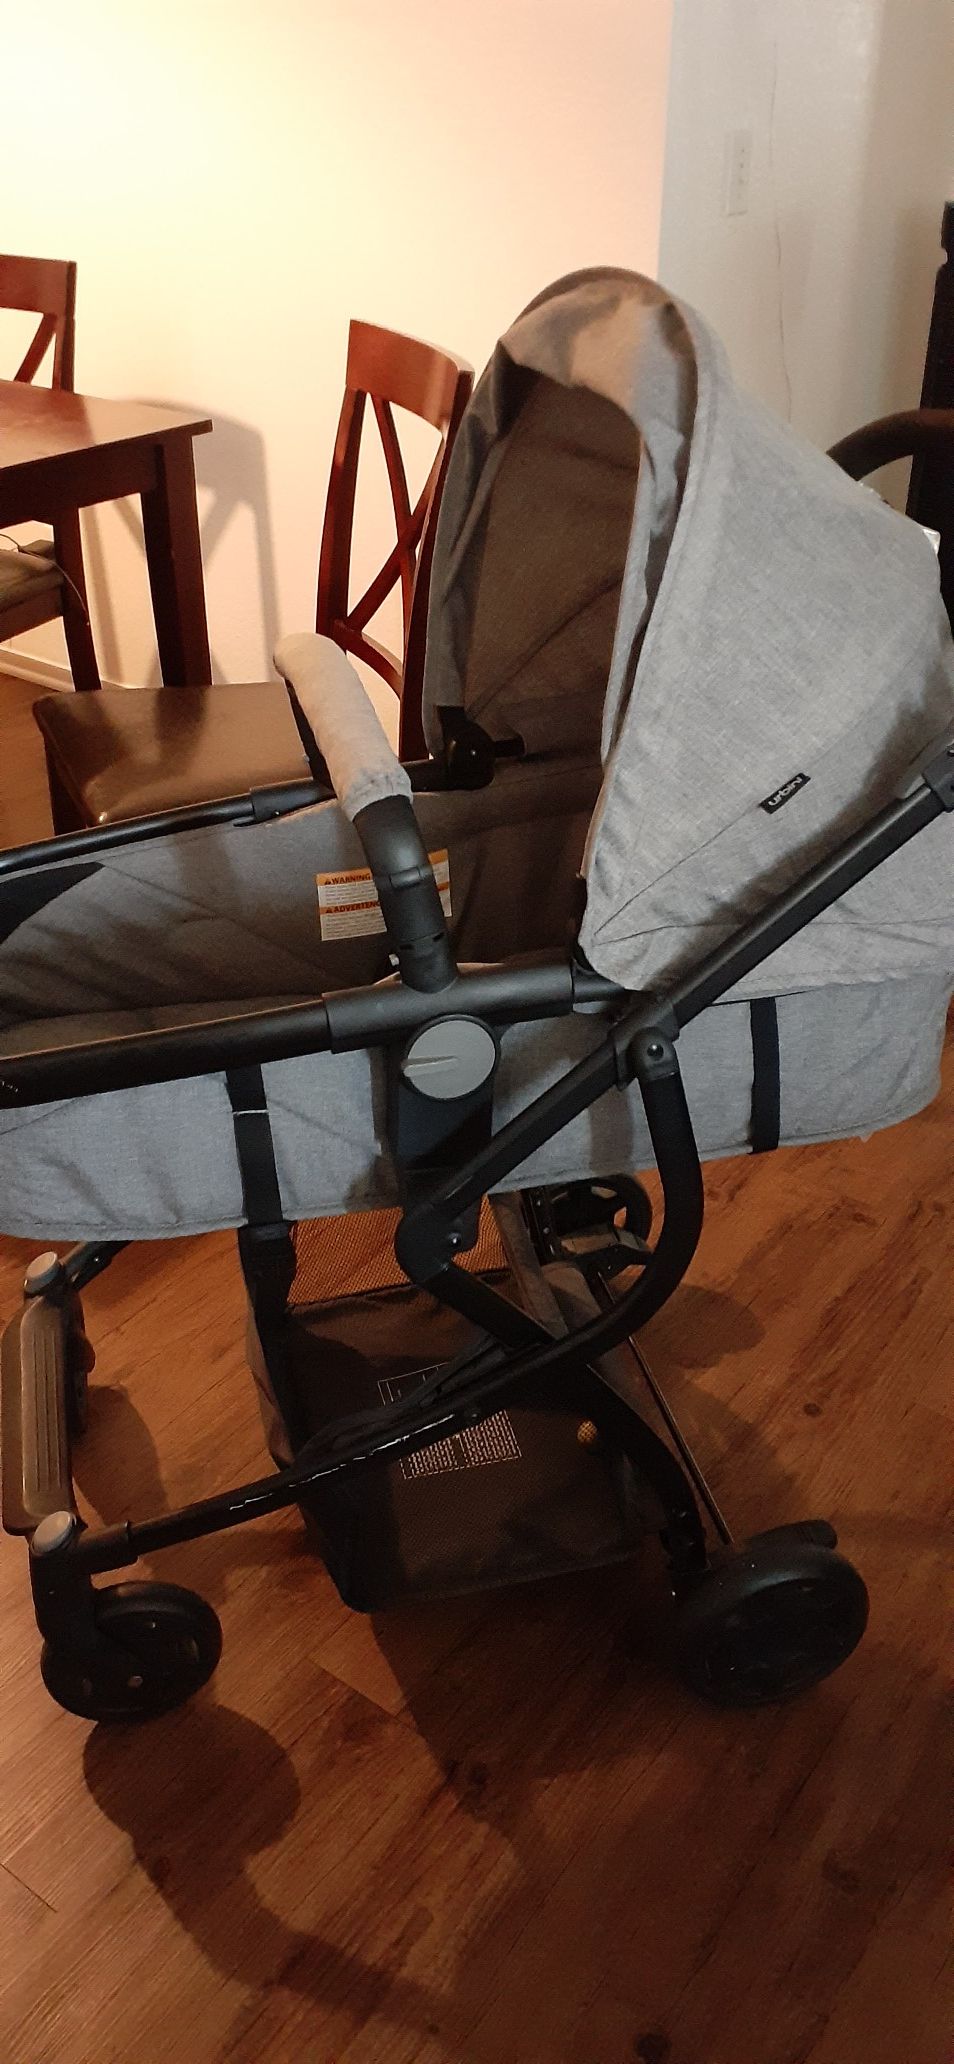 Urbini baby stroller